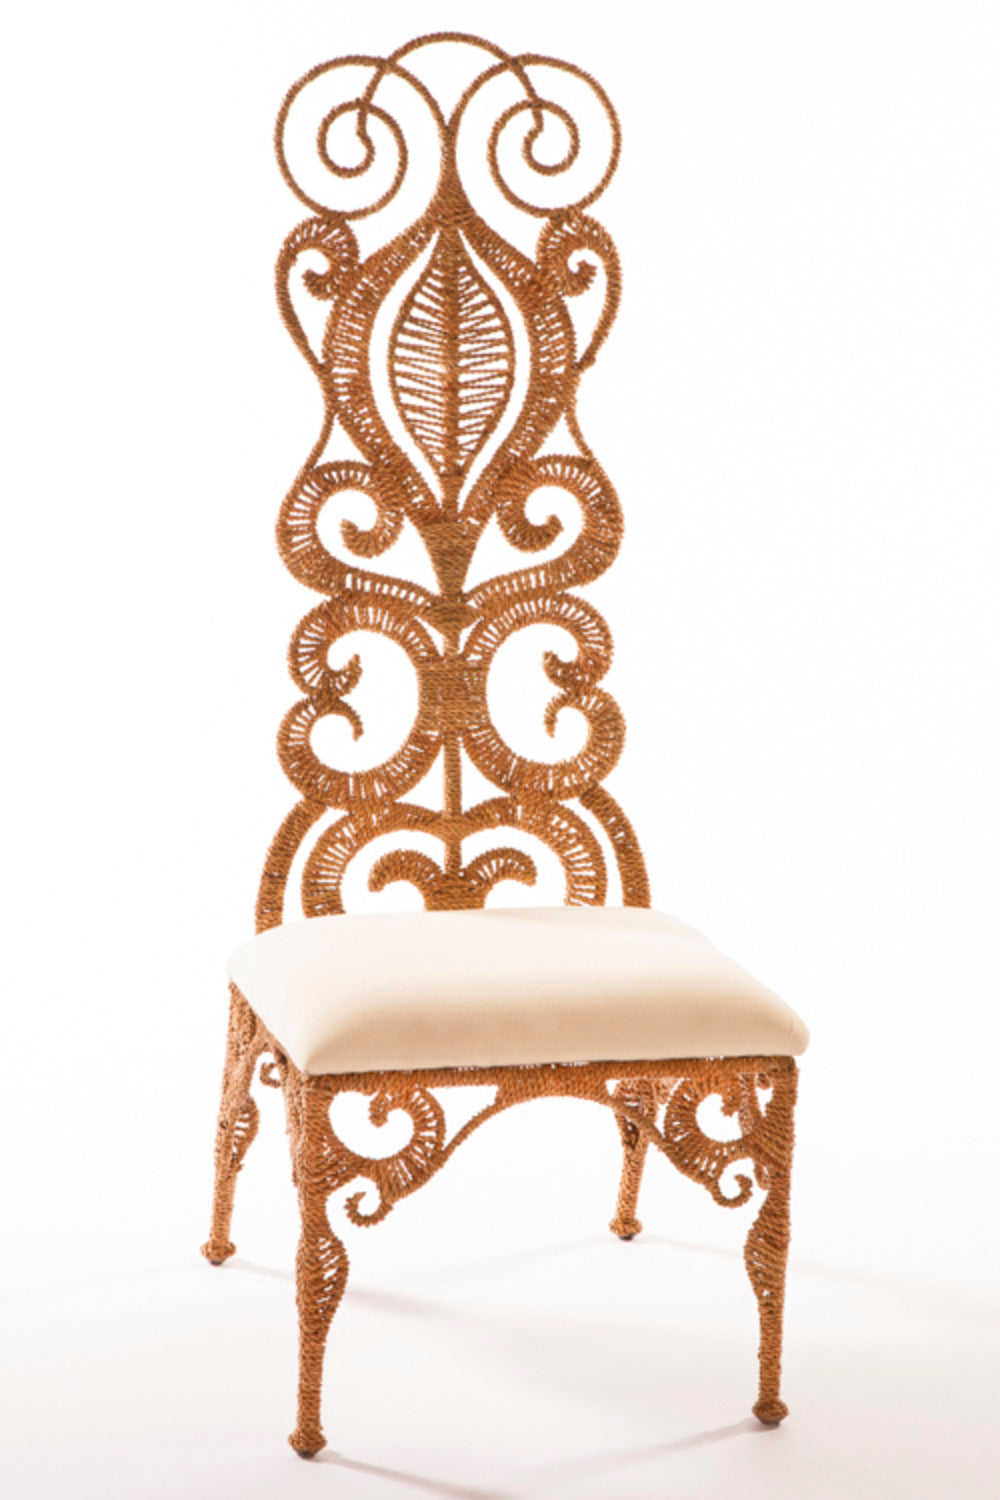 Natalia Chair